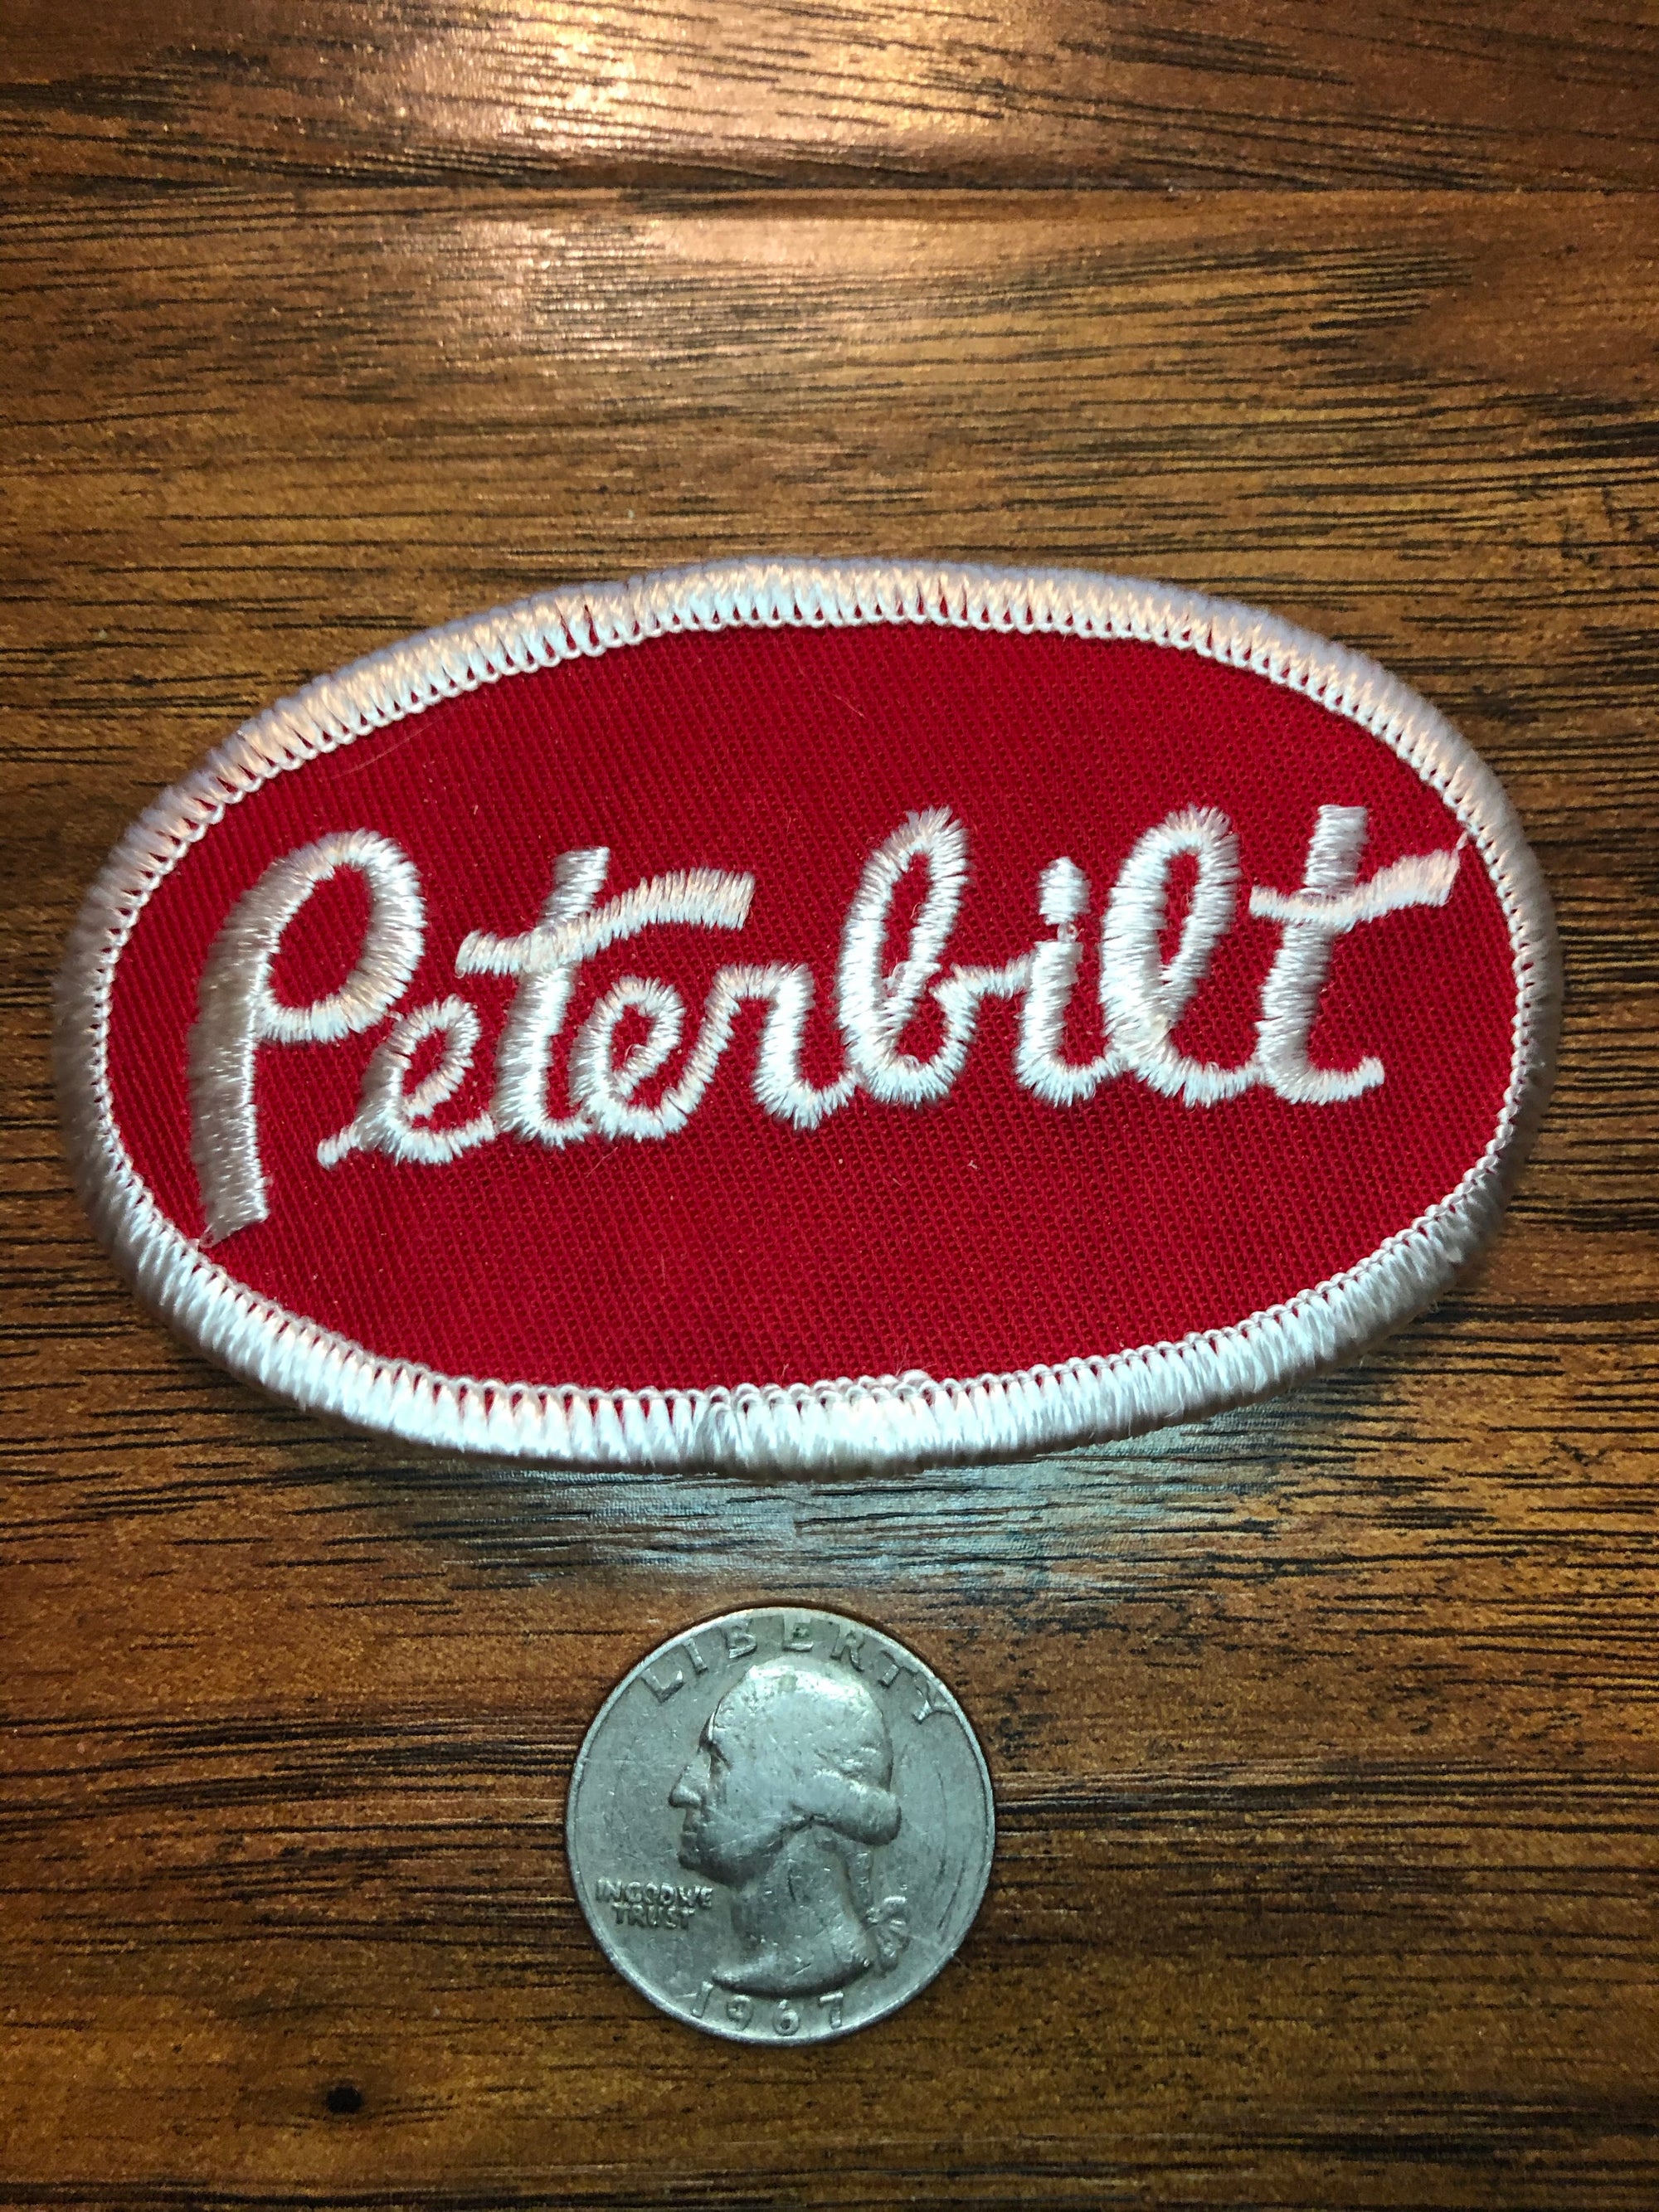 Vintage Peterbilt